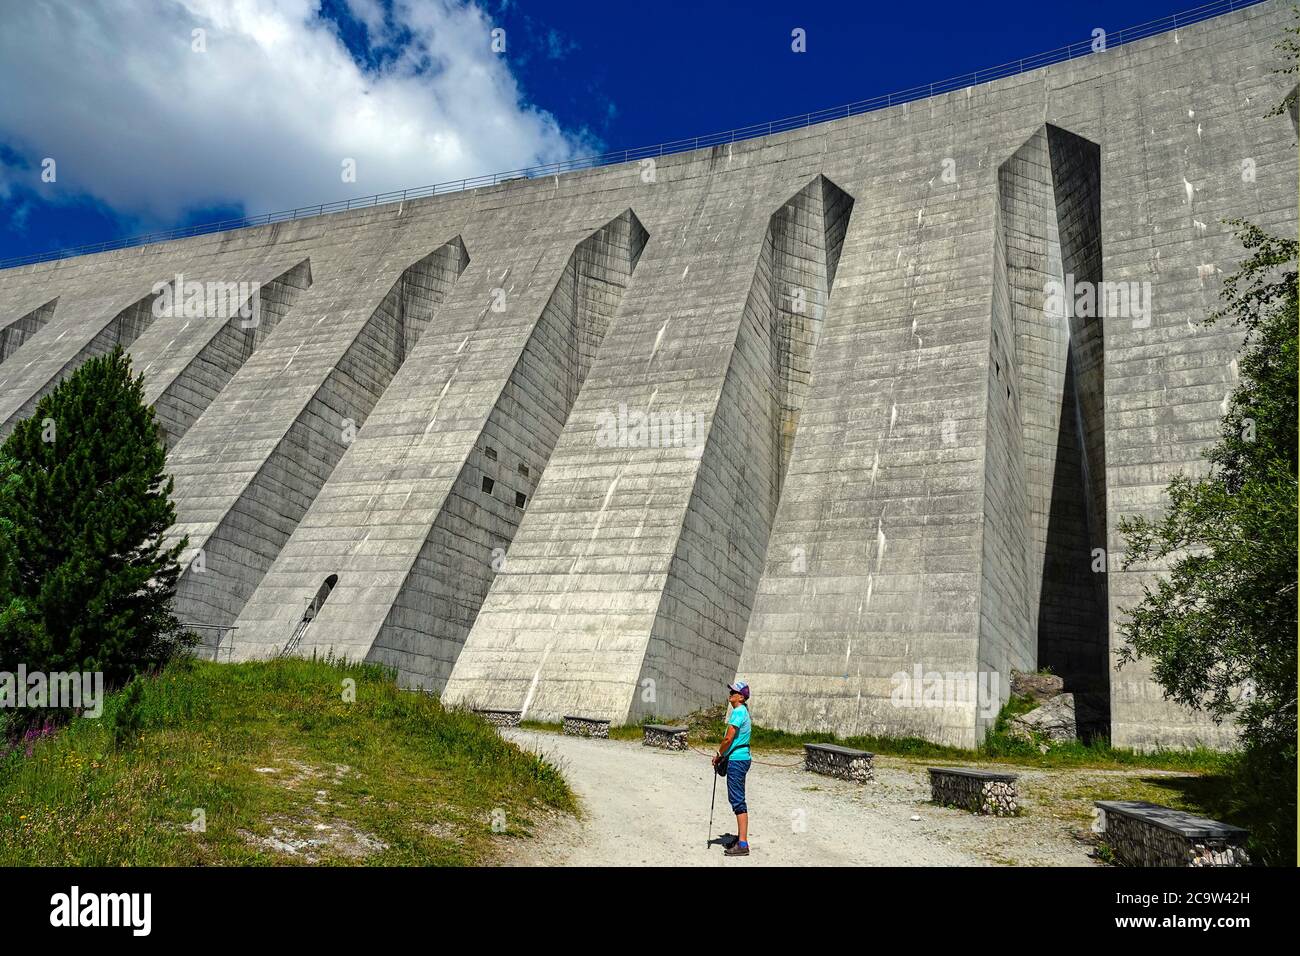 The huge concrete dam at Plan d'Amont, above Aussois, Vanoise National Park, France Stock Photo